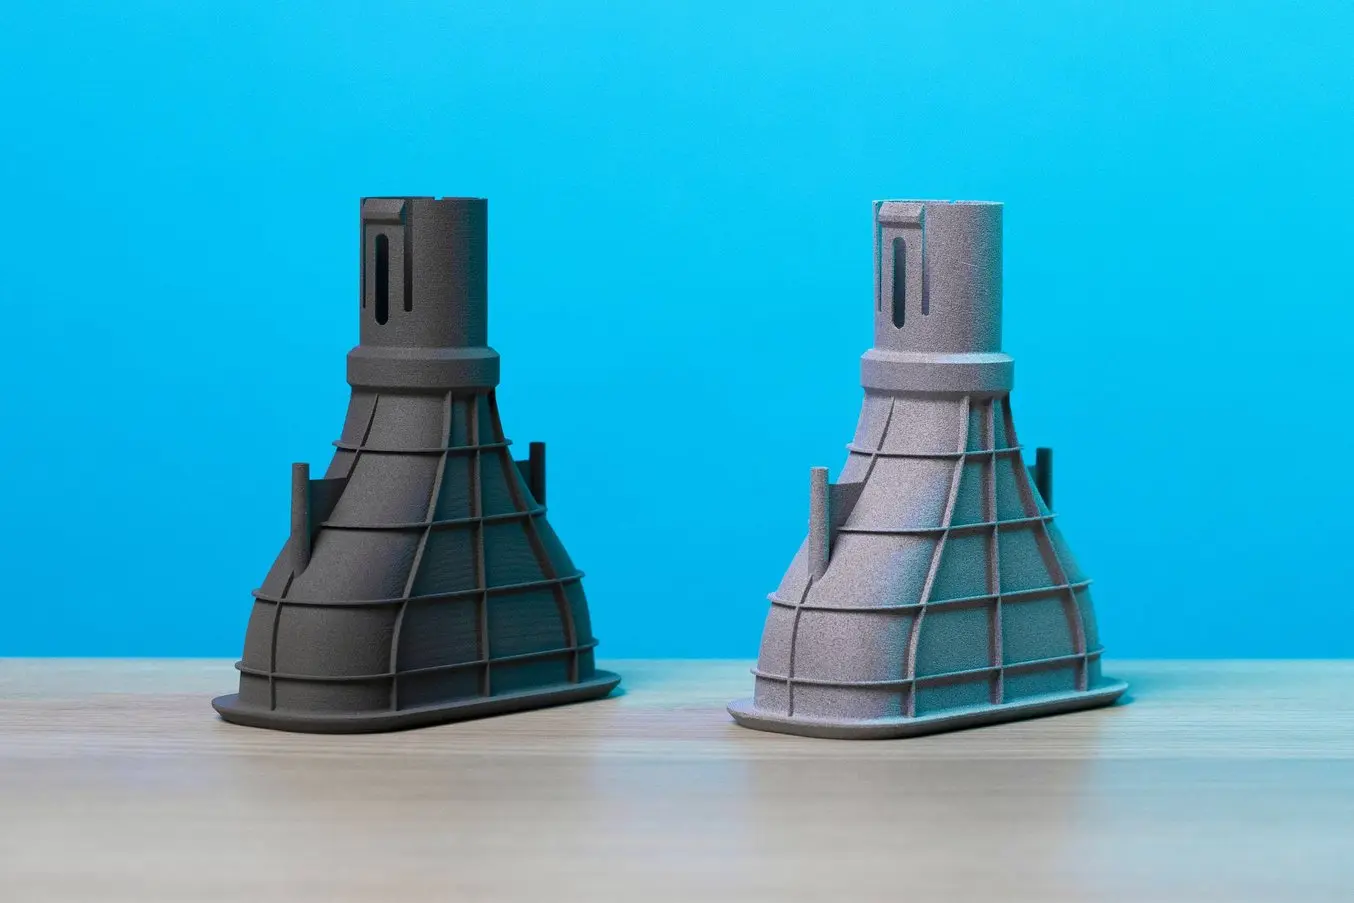 Comparaison des coûts des pièces imprimées en 3D par SLS - prototype de collecteur automobile - fabriqué en interne ou par un sous-traitant (externalisation)